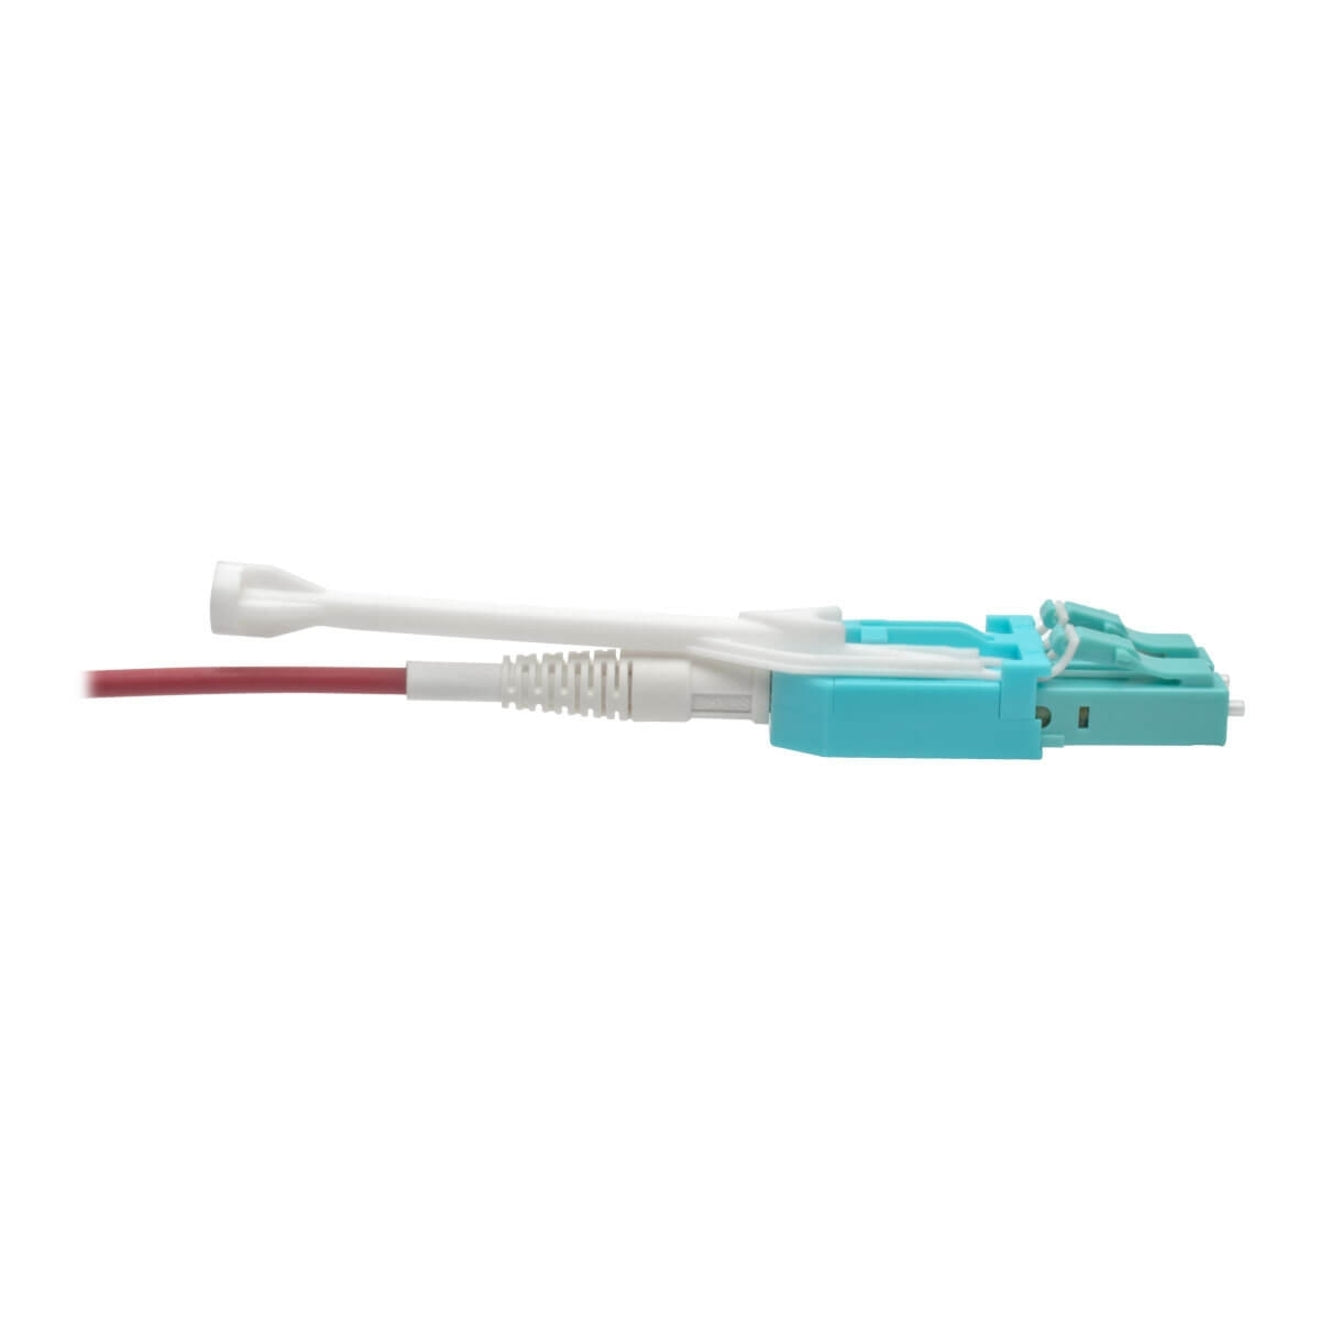 Tripp Lite N821-05M-MG-T Câble de réseau à fibre optique 16.40 pi Multimode 100 Gbit/s Magenta